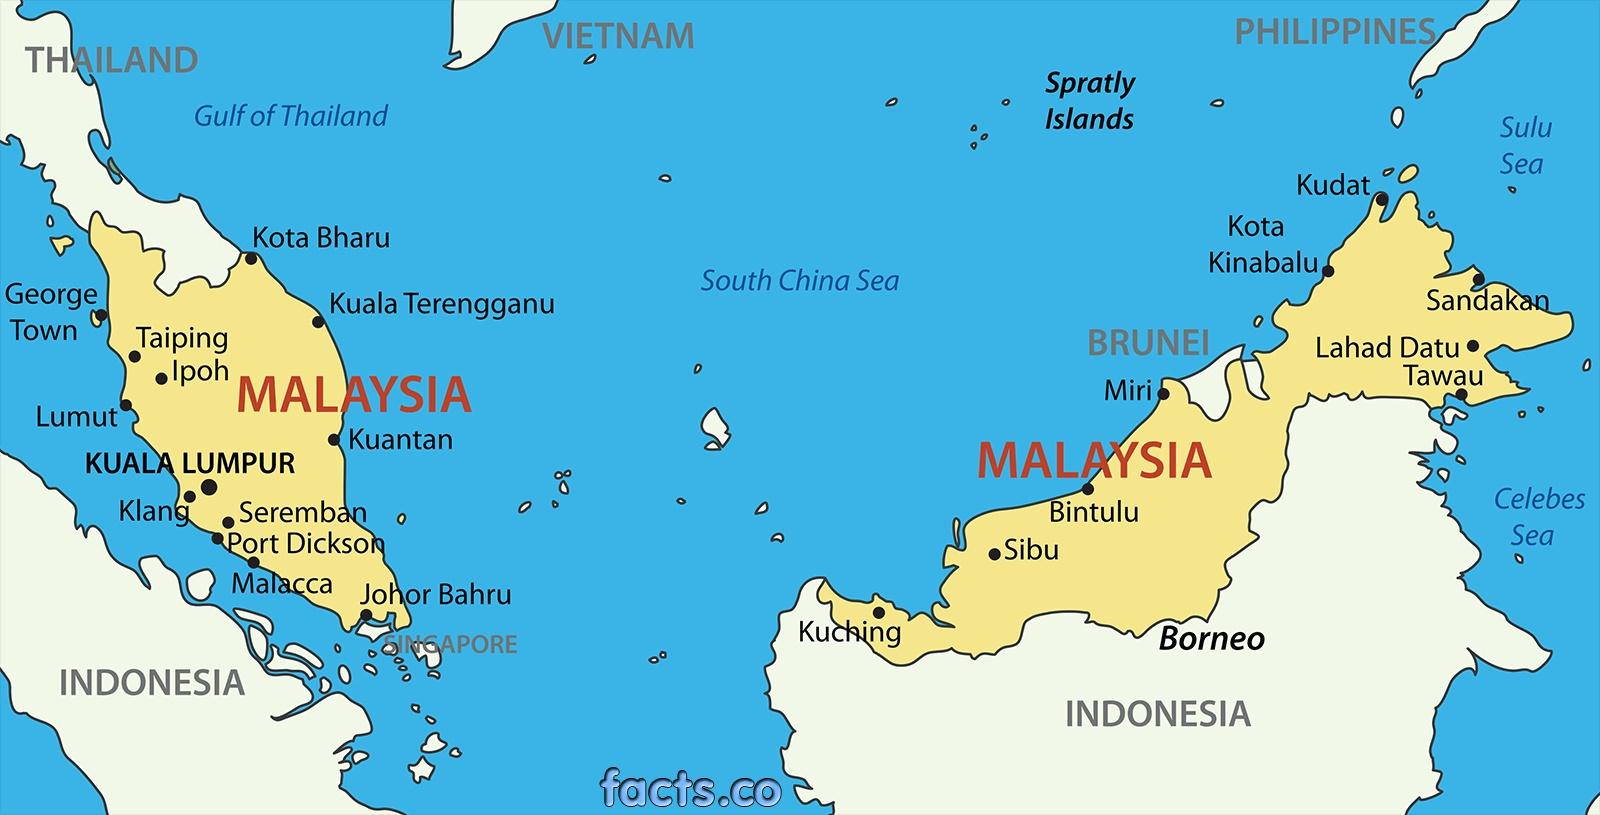 Nếu bạn đang đi tìm bản đồ vector Sarawak chất lượng cao, bạn đã đến đúng nơi. Những hình ảnh tuyệt vời và độ phân giải cao sẽ giúp bạn nắm bắt dễ dàng những cảnh quan vùng đất đặc biệt của Sarawak.